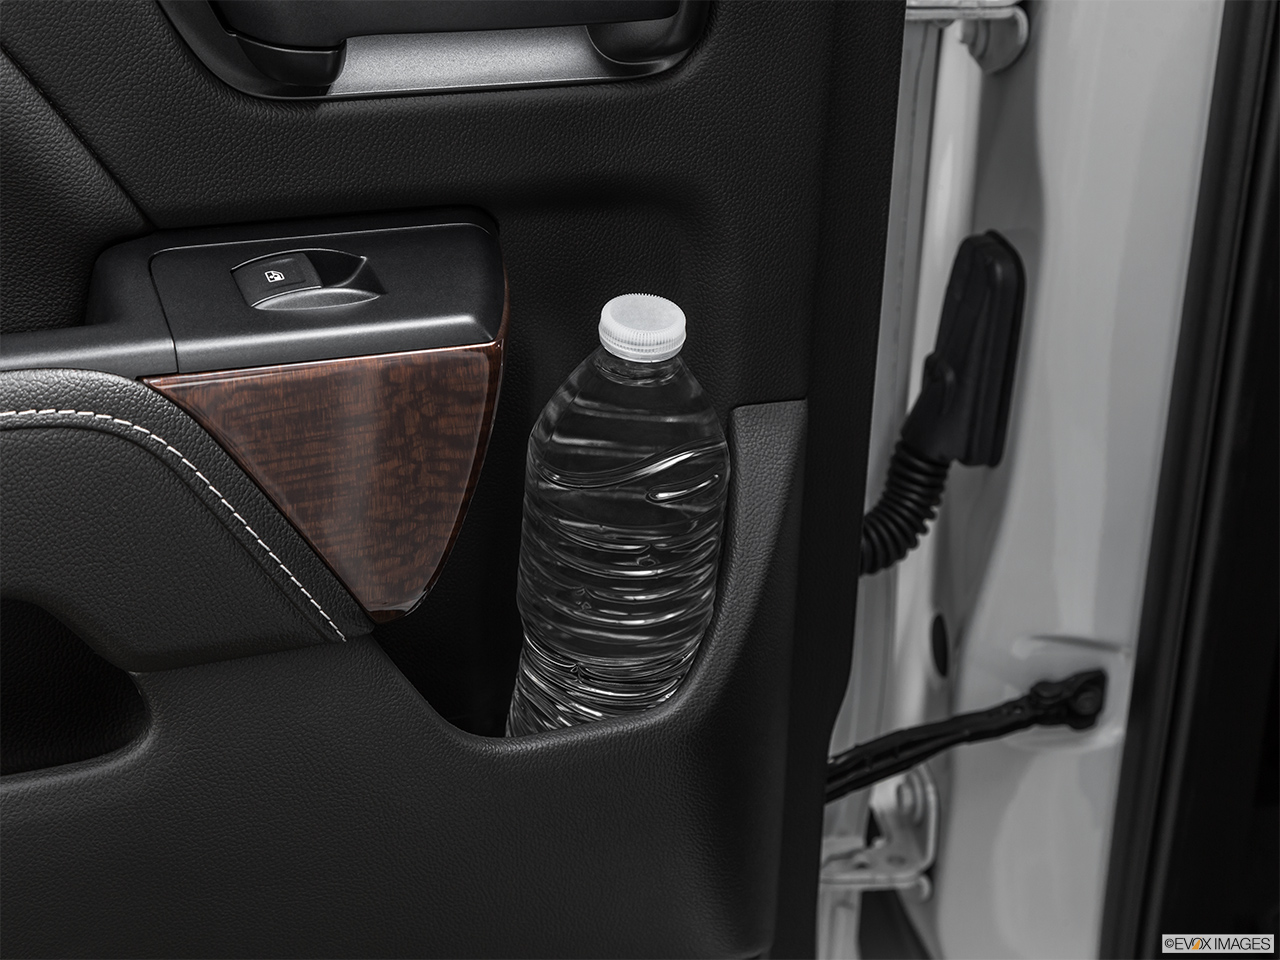 2019 GMC Sierra 2500HD SLE Second row side cup holder with coffee prop, or second row door cup holder with water bottle. 